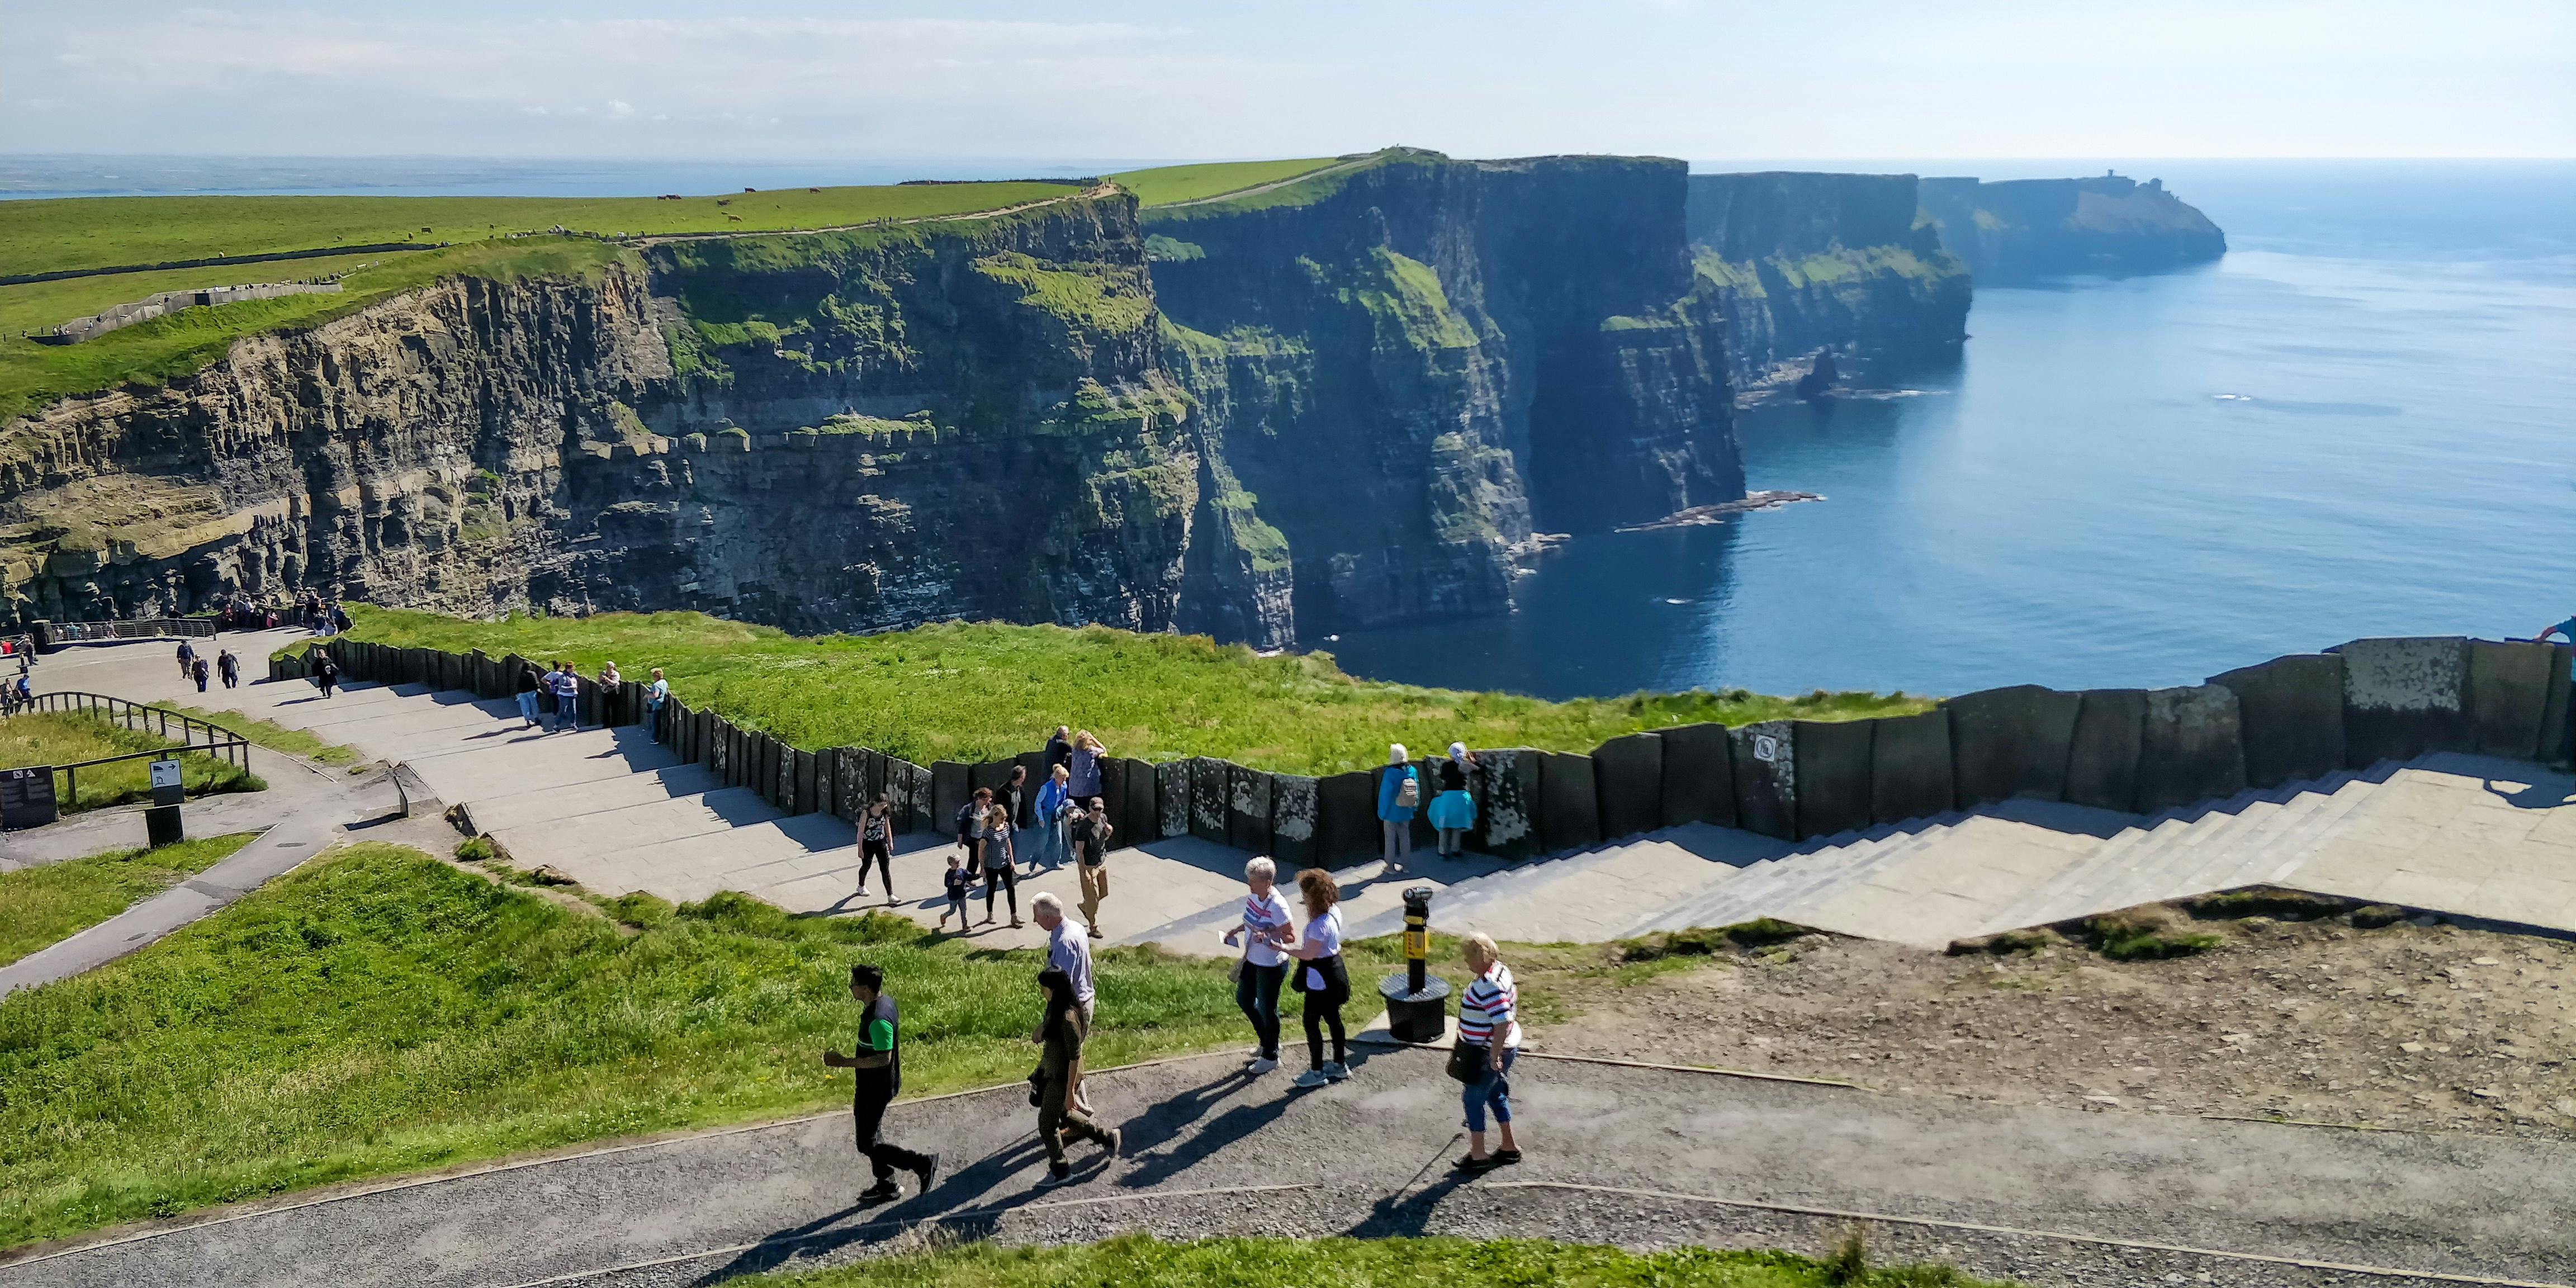 Halbtägiger Ausflug zu den Cliffs of Moher ab Galway